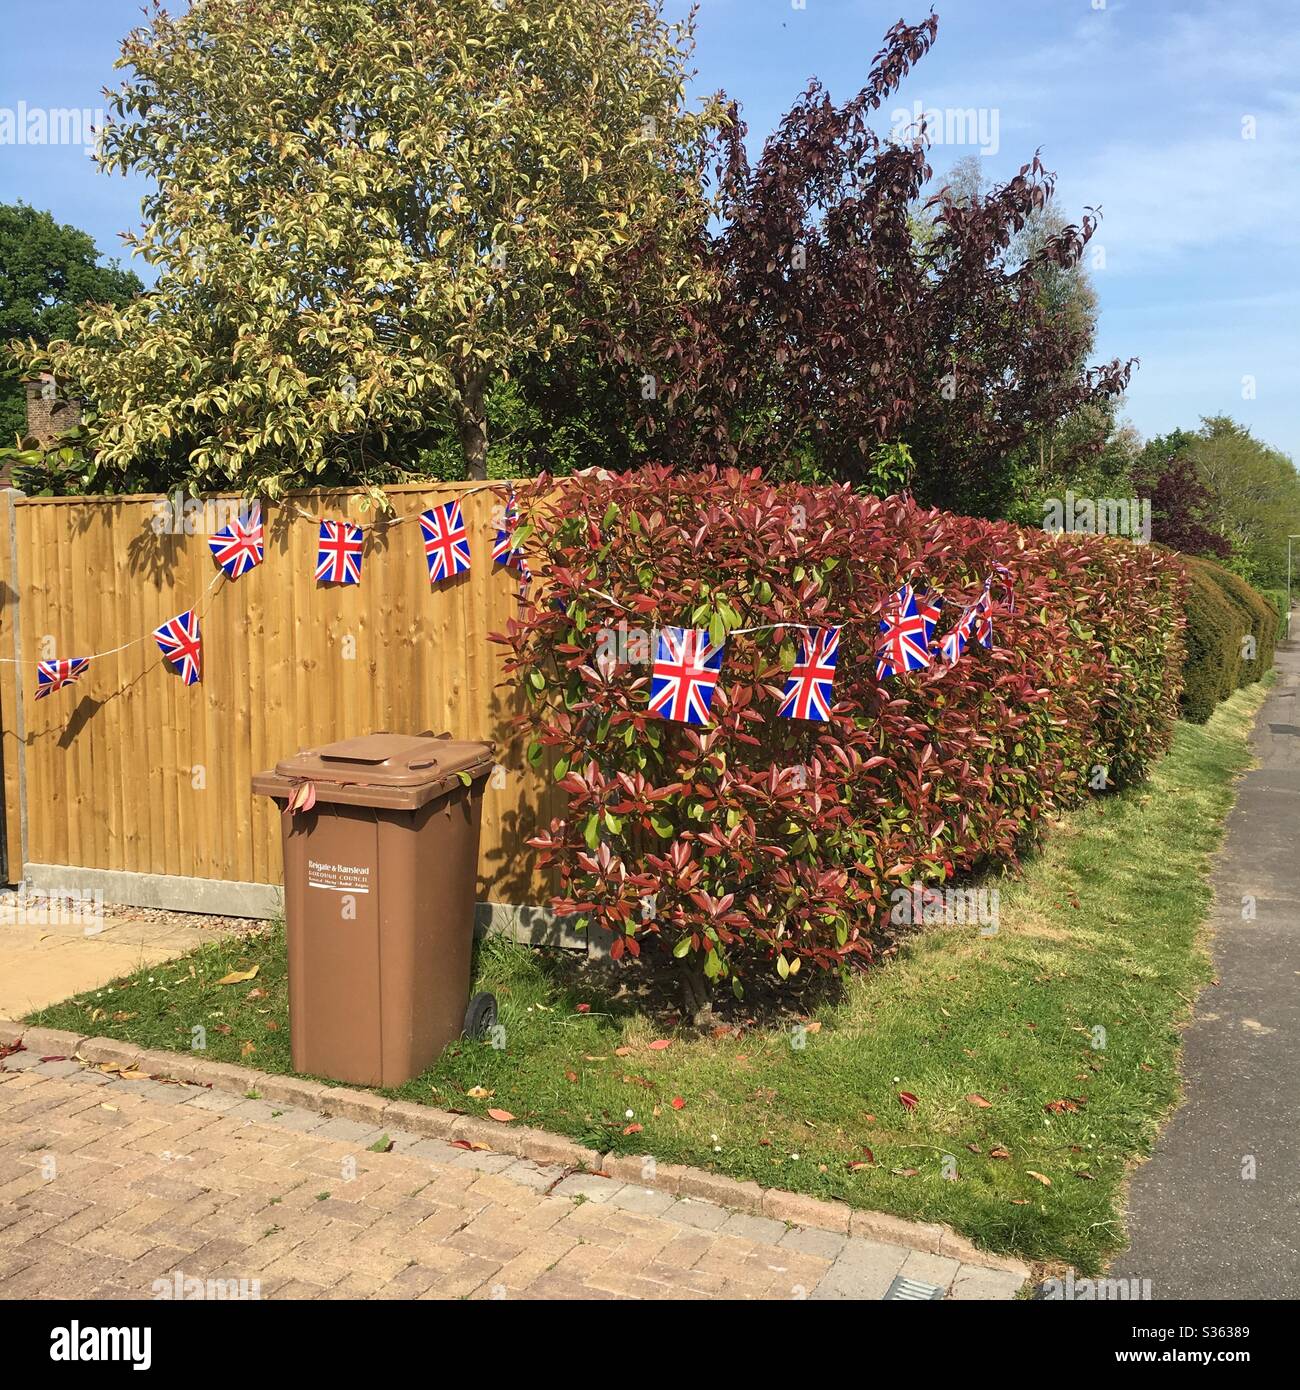 Ve Day il giorno bin - Ve Day celebrazioni con una siepe e recinzione decorata con Union Jack bunting bandiera Foto Stock